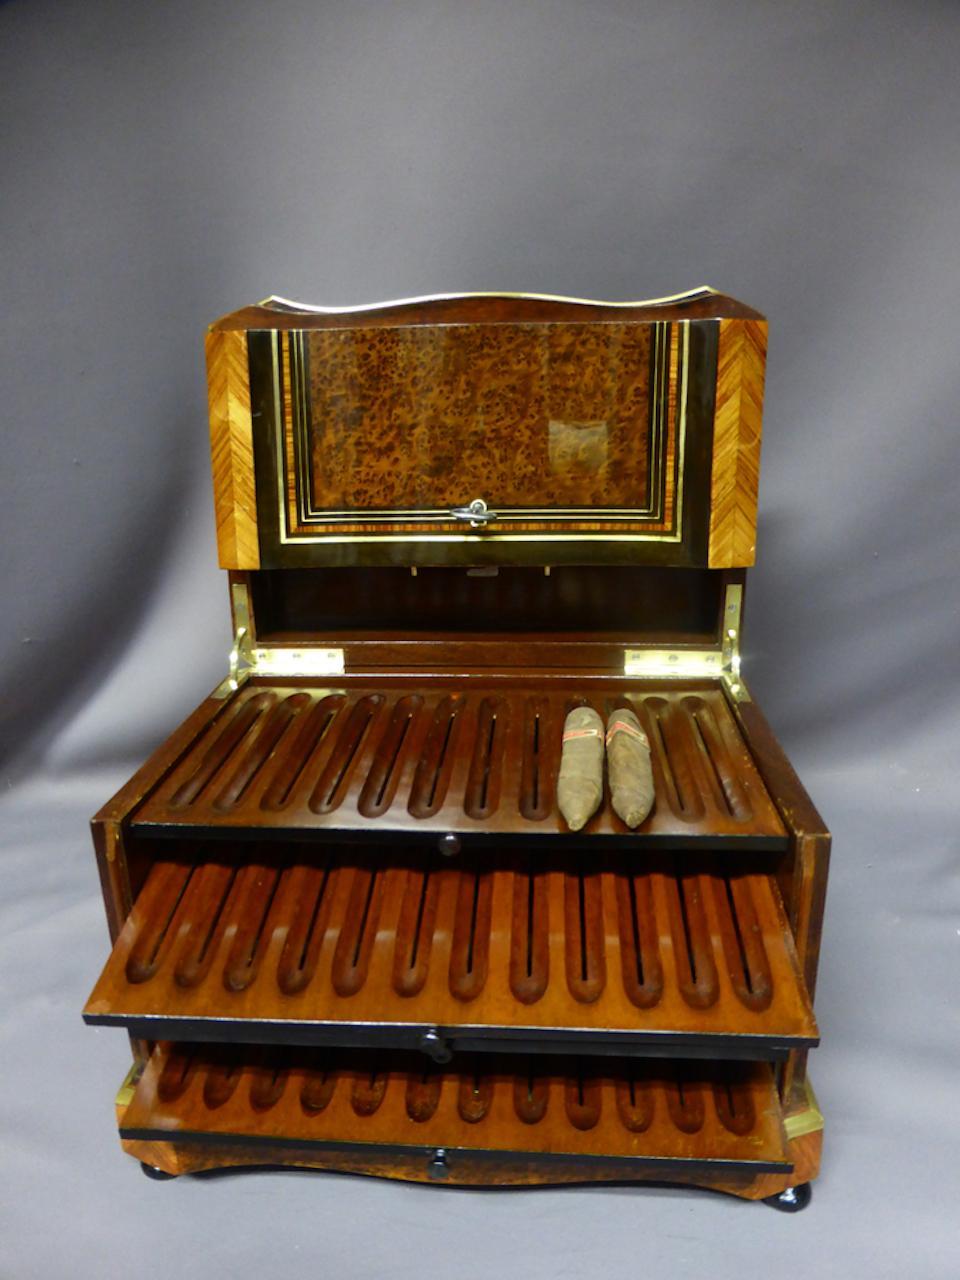 XIX Zigarrenkeller in Vergrößerungsglas und Intarsien. 
Diese Kiste hat vier Zigarrenständer und eine Schublade. Eine Kartusche mit Intarsien
und Perlmutt ziert die Oberseite der Schachtel.
Ausgezeichneter Zustand und Qualität.